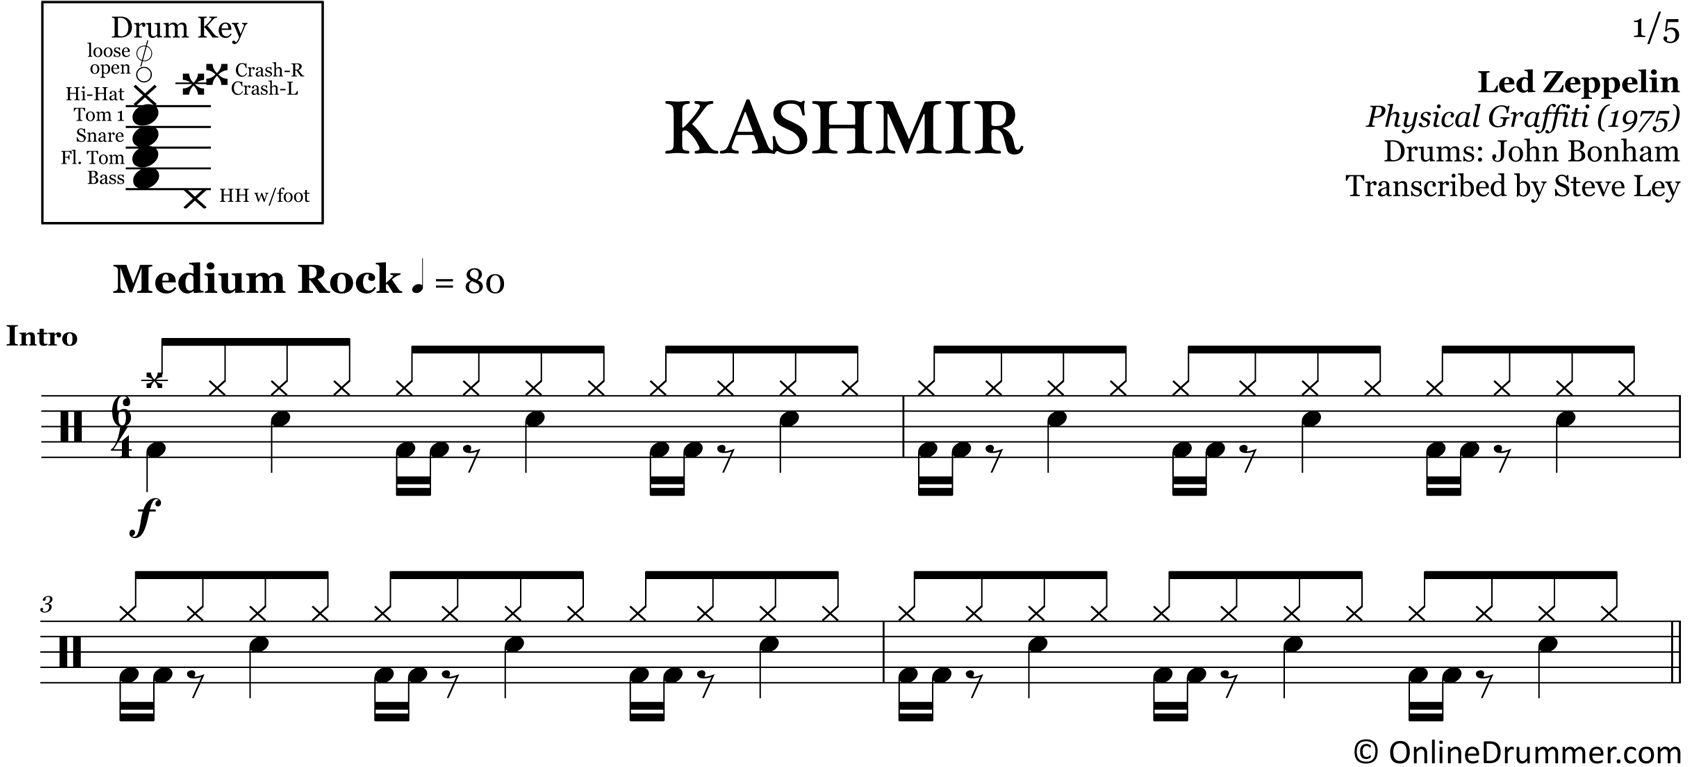 Kashmir - Led Zeppelin - Drum Sheet Music